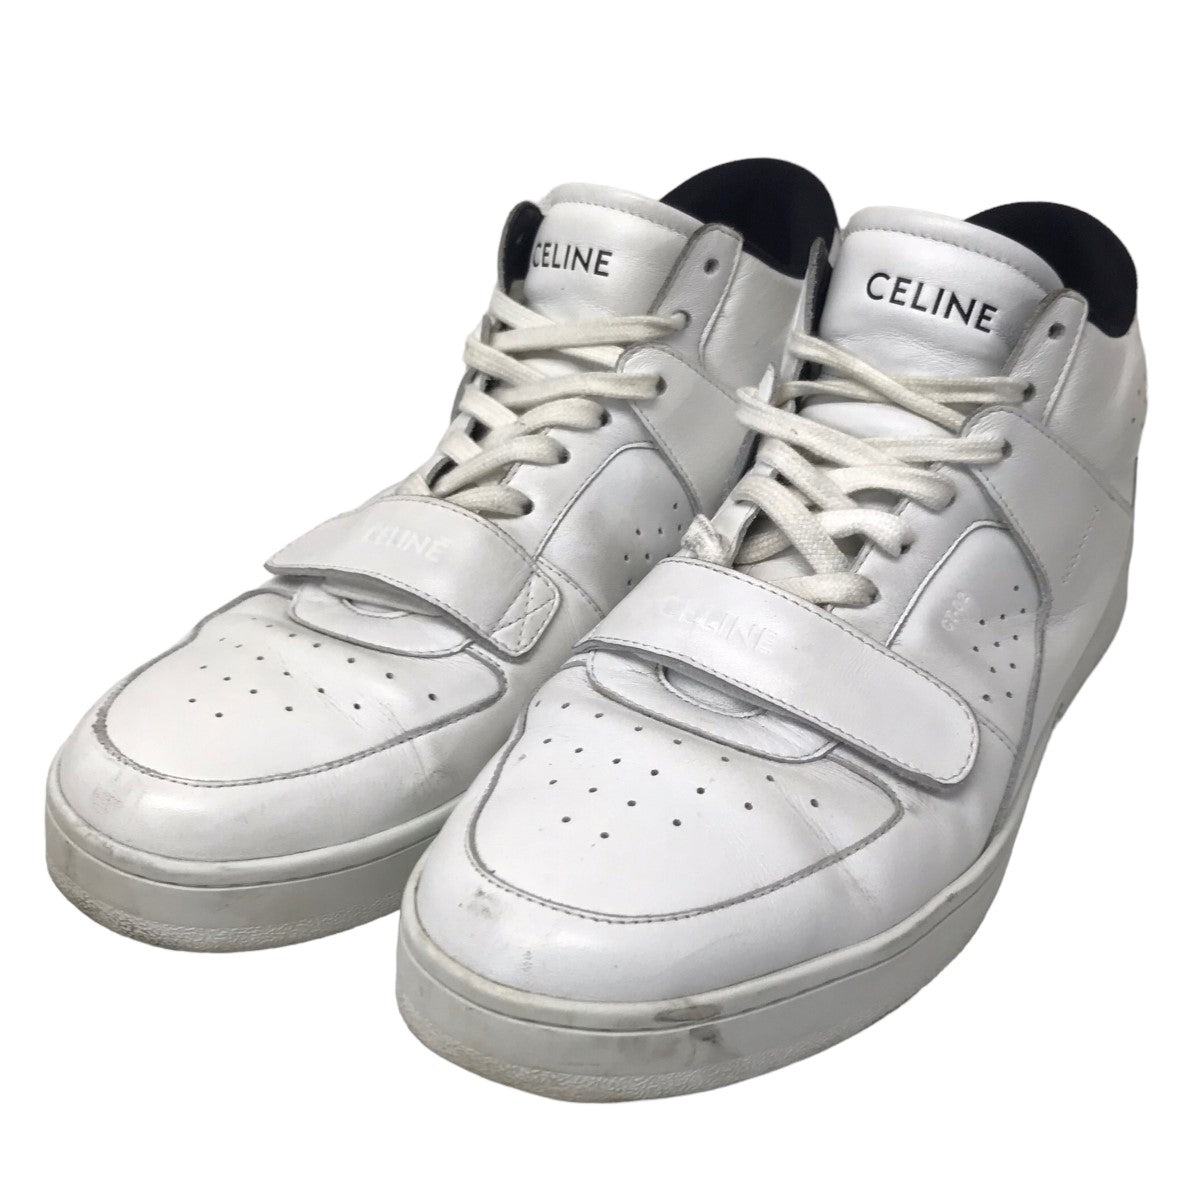 CELINE(セリーヌ) 「CT-02」ベルクロストラッフ゜付きミドルスニーカー 